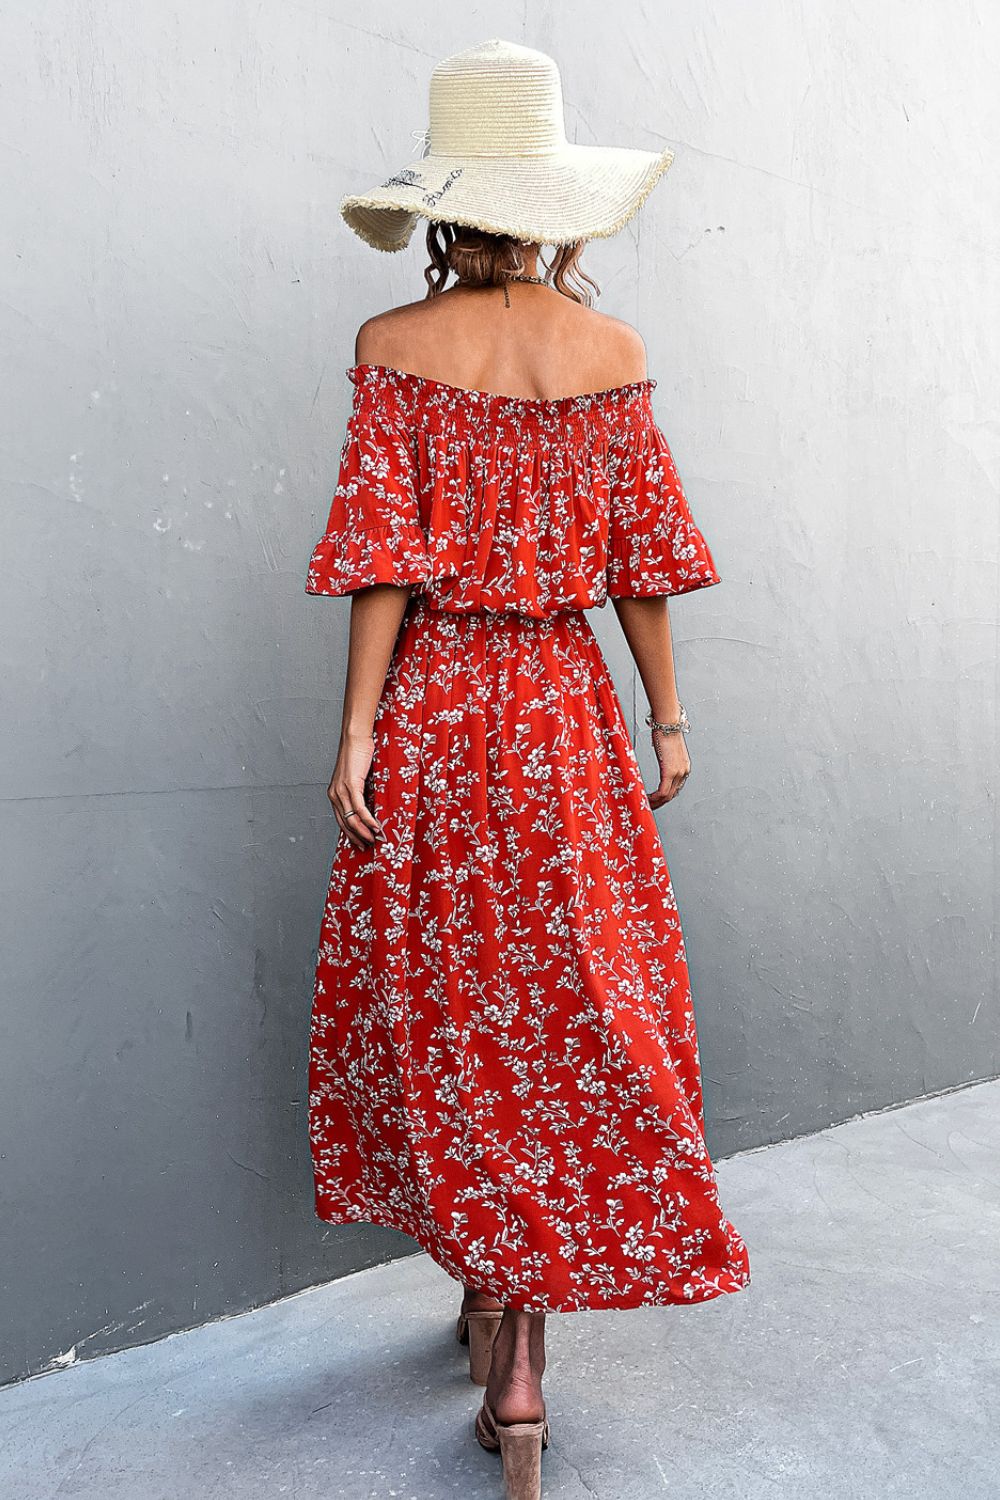 Floral Off-Shoulder Front Split Dress